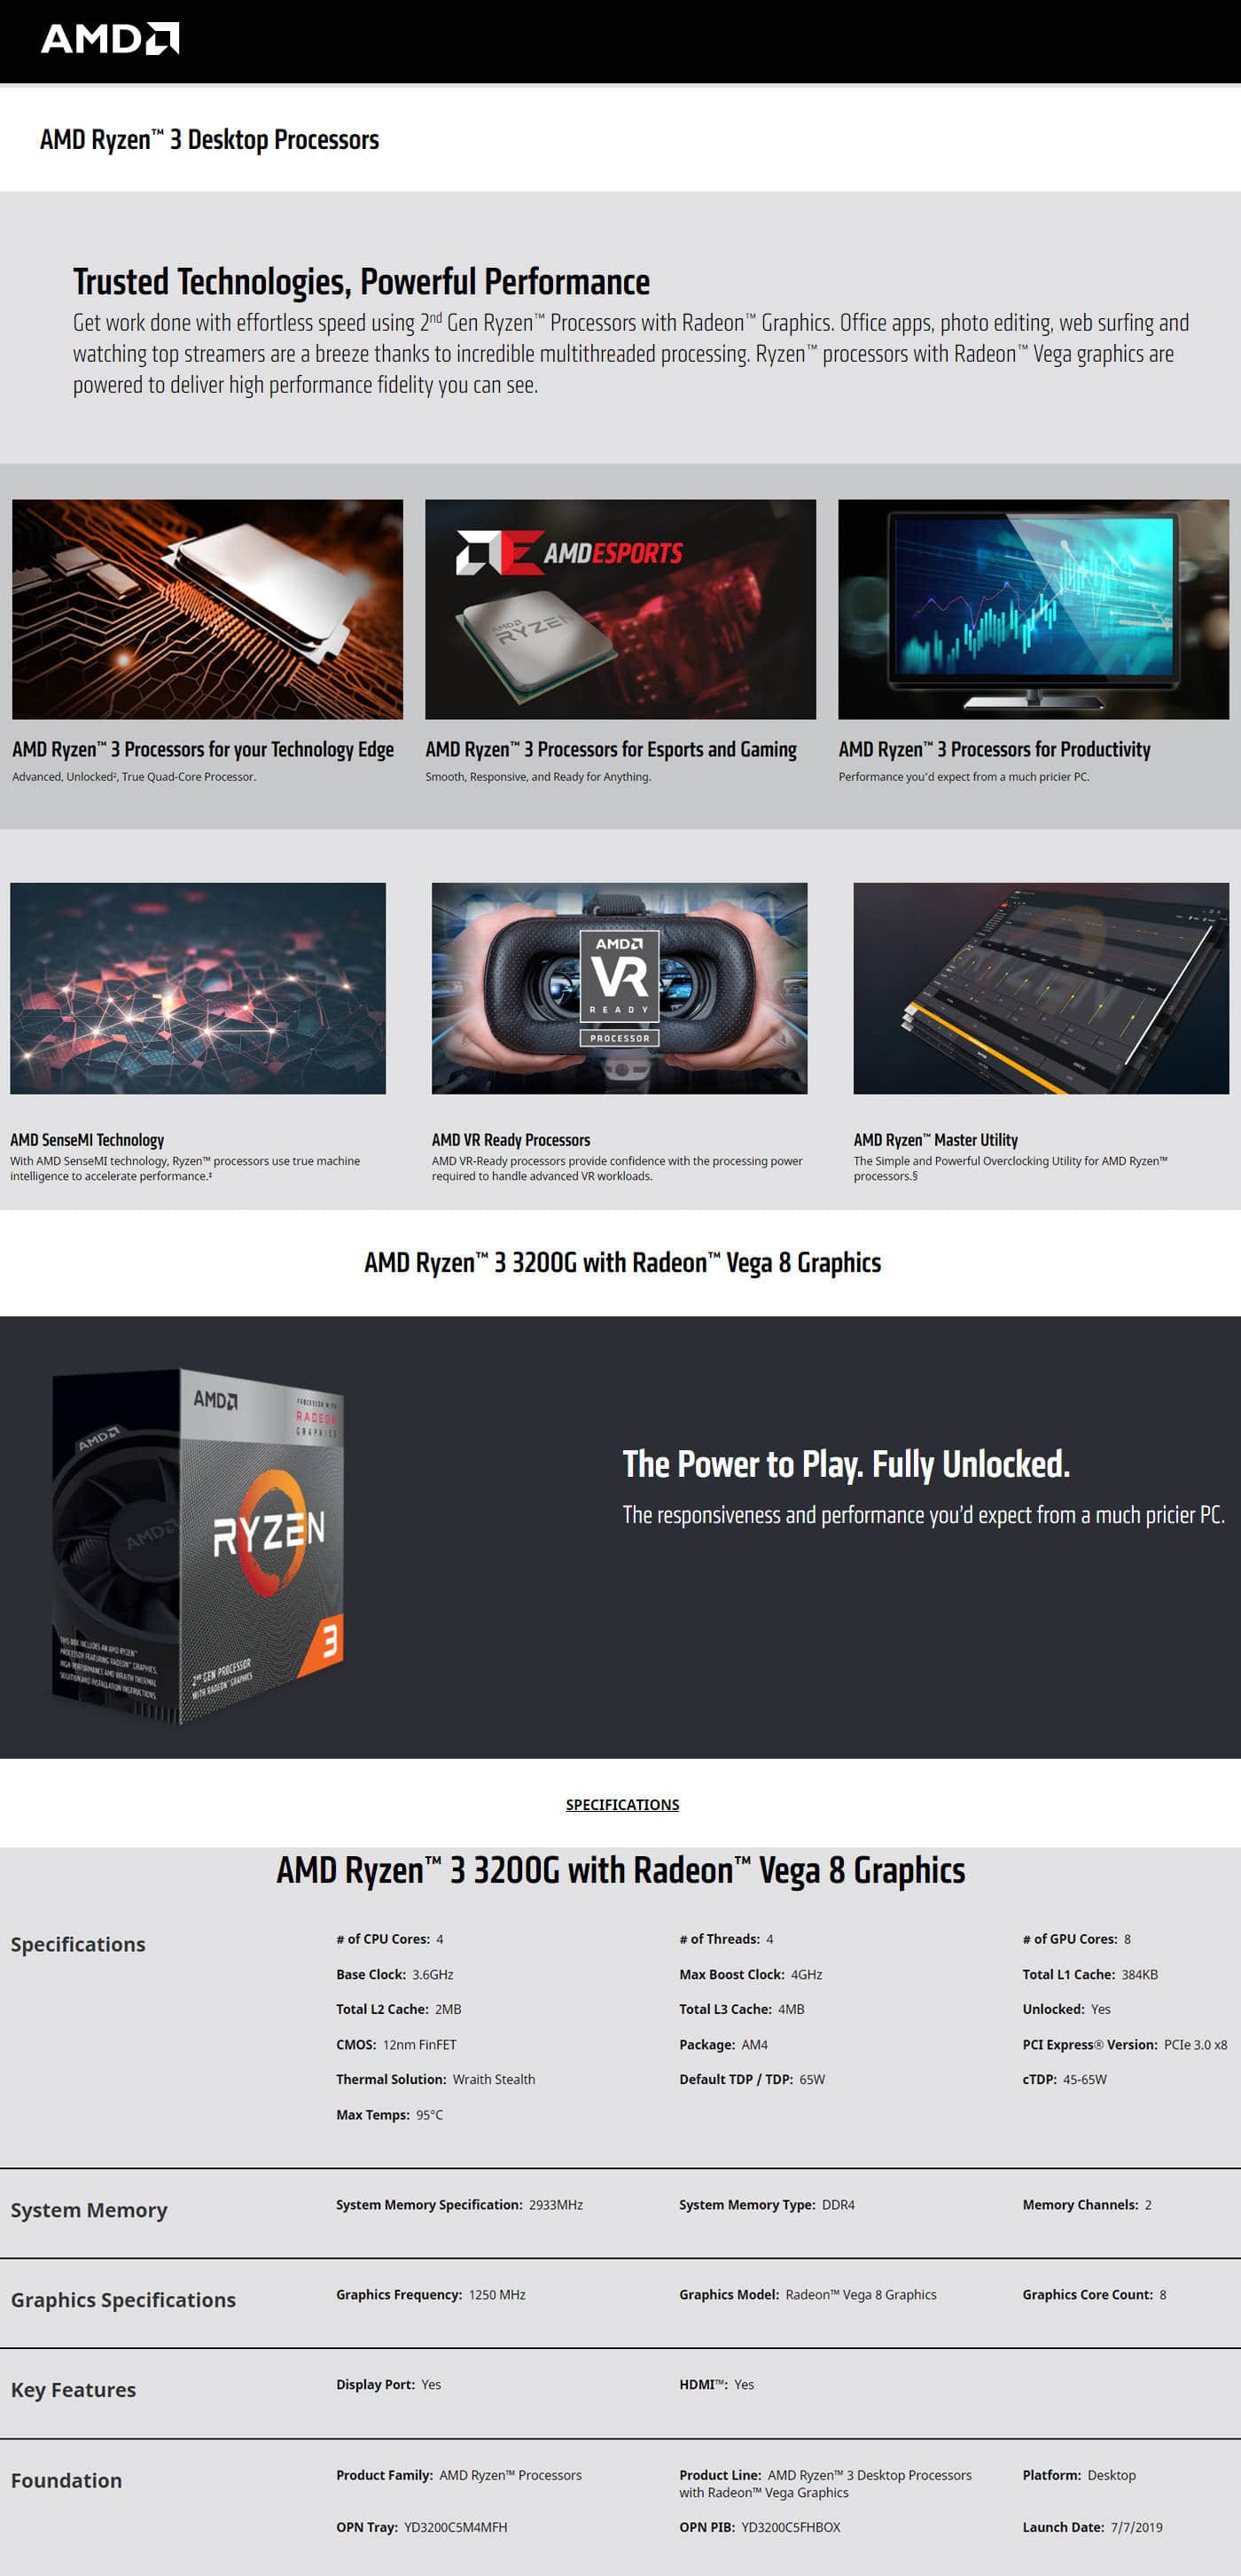 Buy Online AMD Ryzen 3 3200G with Radeon Vega 8 Graphics